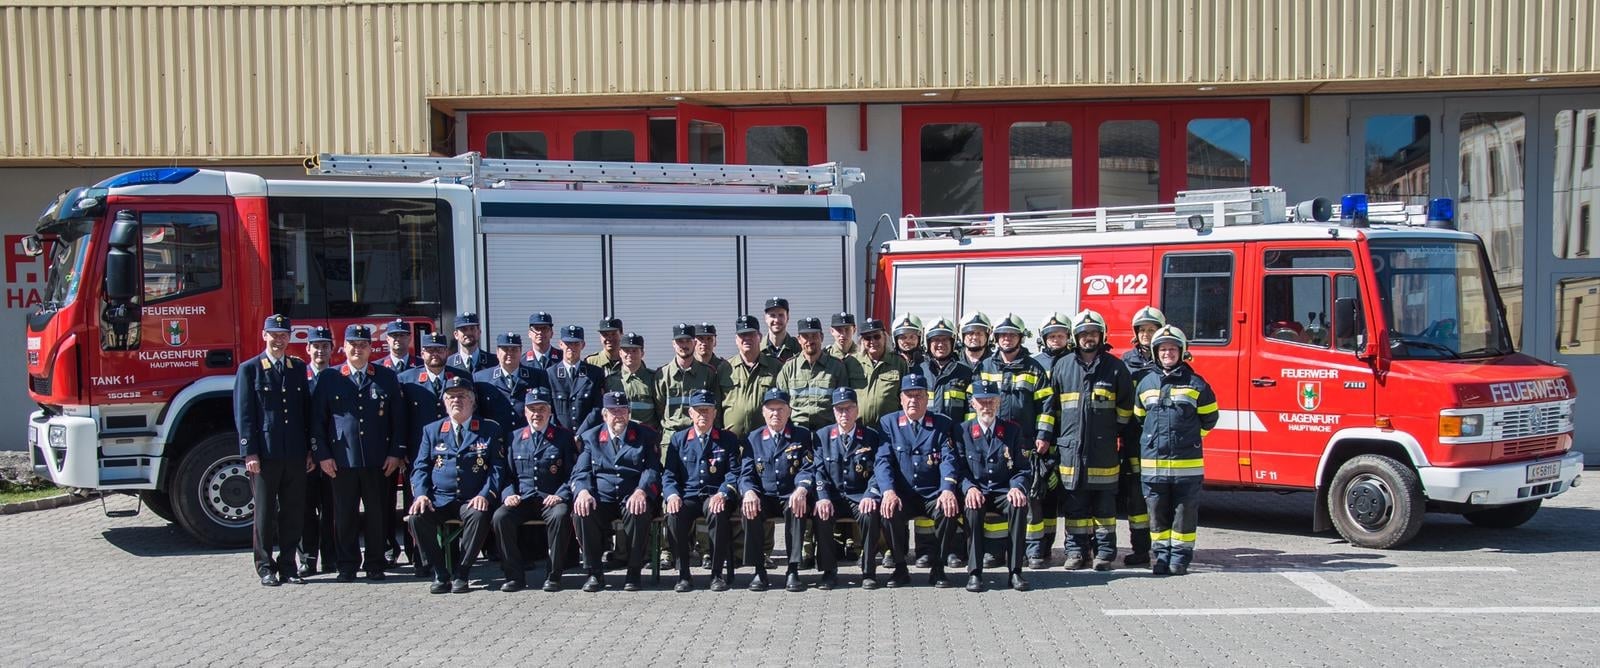 Derzeit sind 60 Kameradinnen und Kameraden, davon 52 Mitglieder im aktiven Einsatzdienst, bei der FF Hauptwache/Klagenfurt im Einsatz.